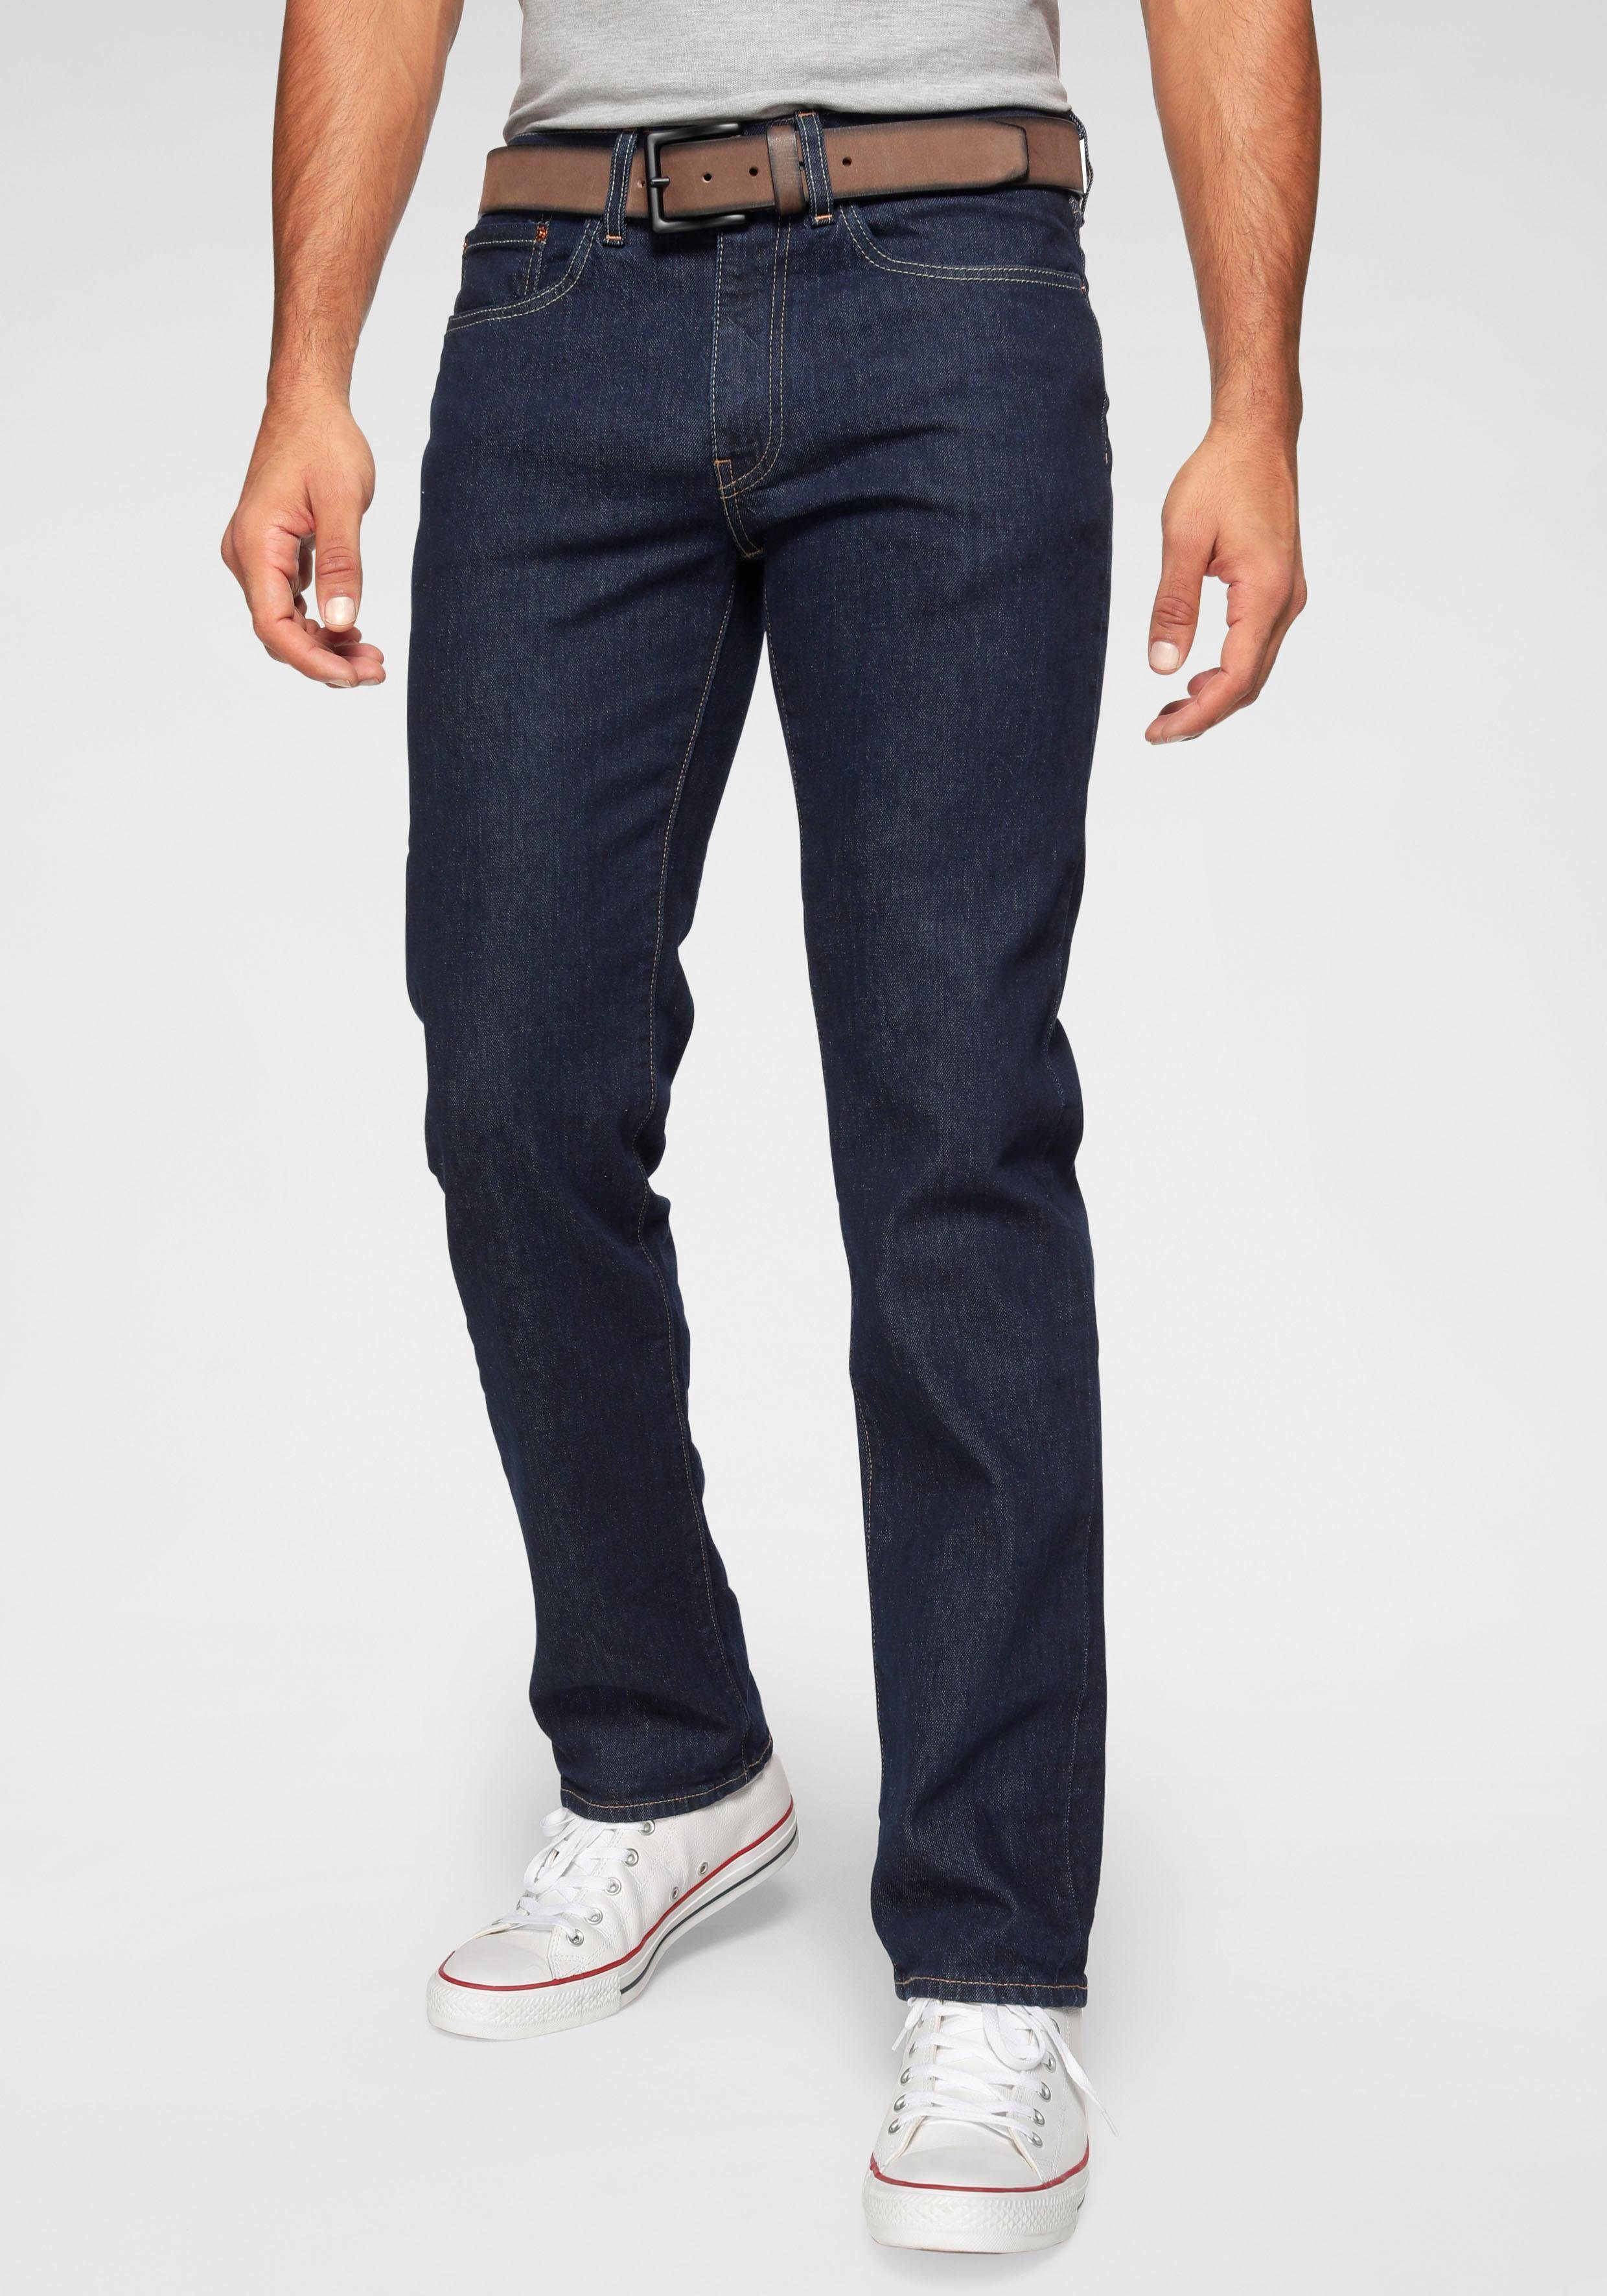 Levi's Herren Jeans online kaufen | OTTO